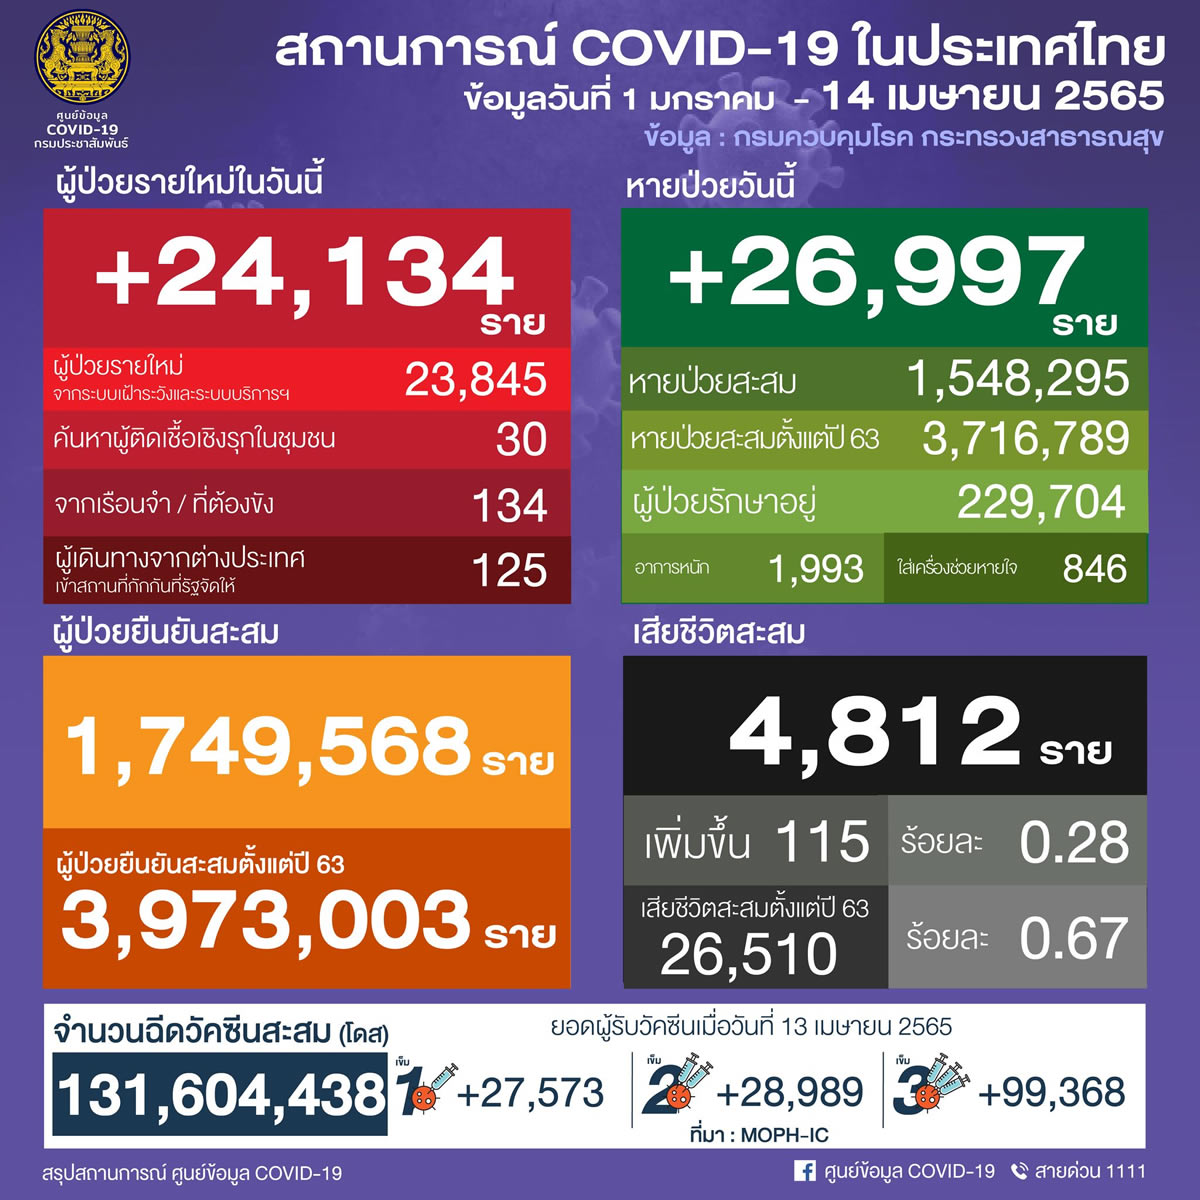 タイ 24,134人陽性 115人死亡／バンコク 3,221人陽性／チョンブリ 1,034人陽性／コンケーン 909人陽性［2022年4月14日発表］